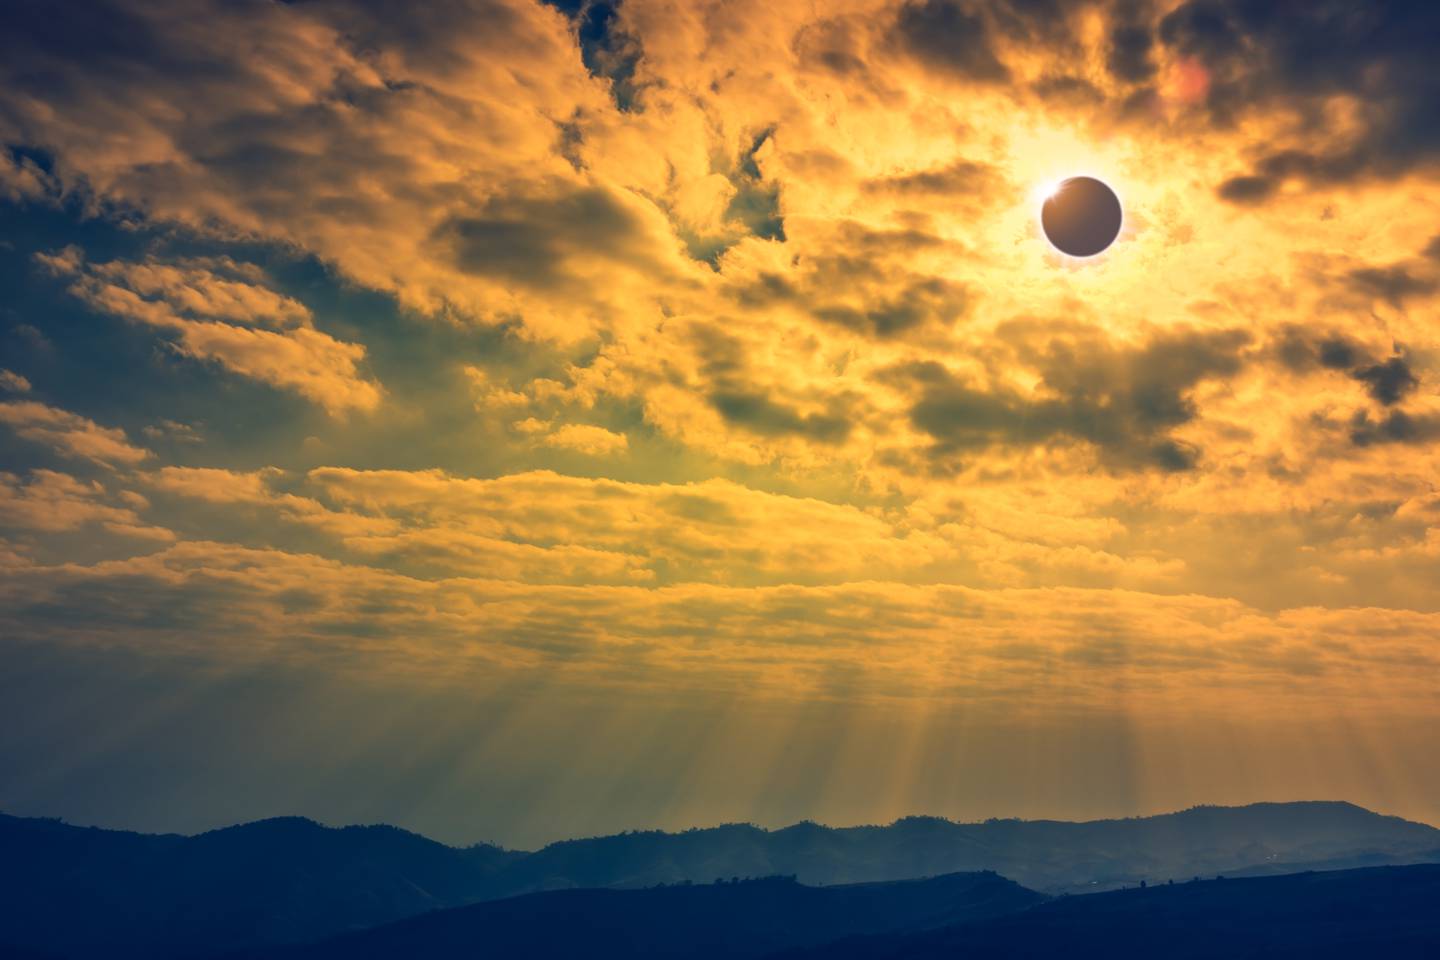 Un un eclipse anular sucede cuando nuestro satélite natural se sitúa frente al Sol pero sin cubrir toda su superficie, por lo que se proyecta un disco oscuro encima de la estrella. De ahí el efecto de "anillo de fuego". Fotografía: